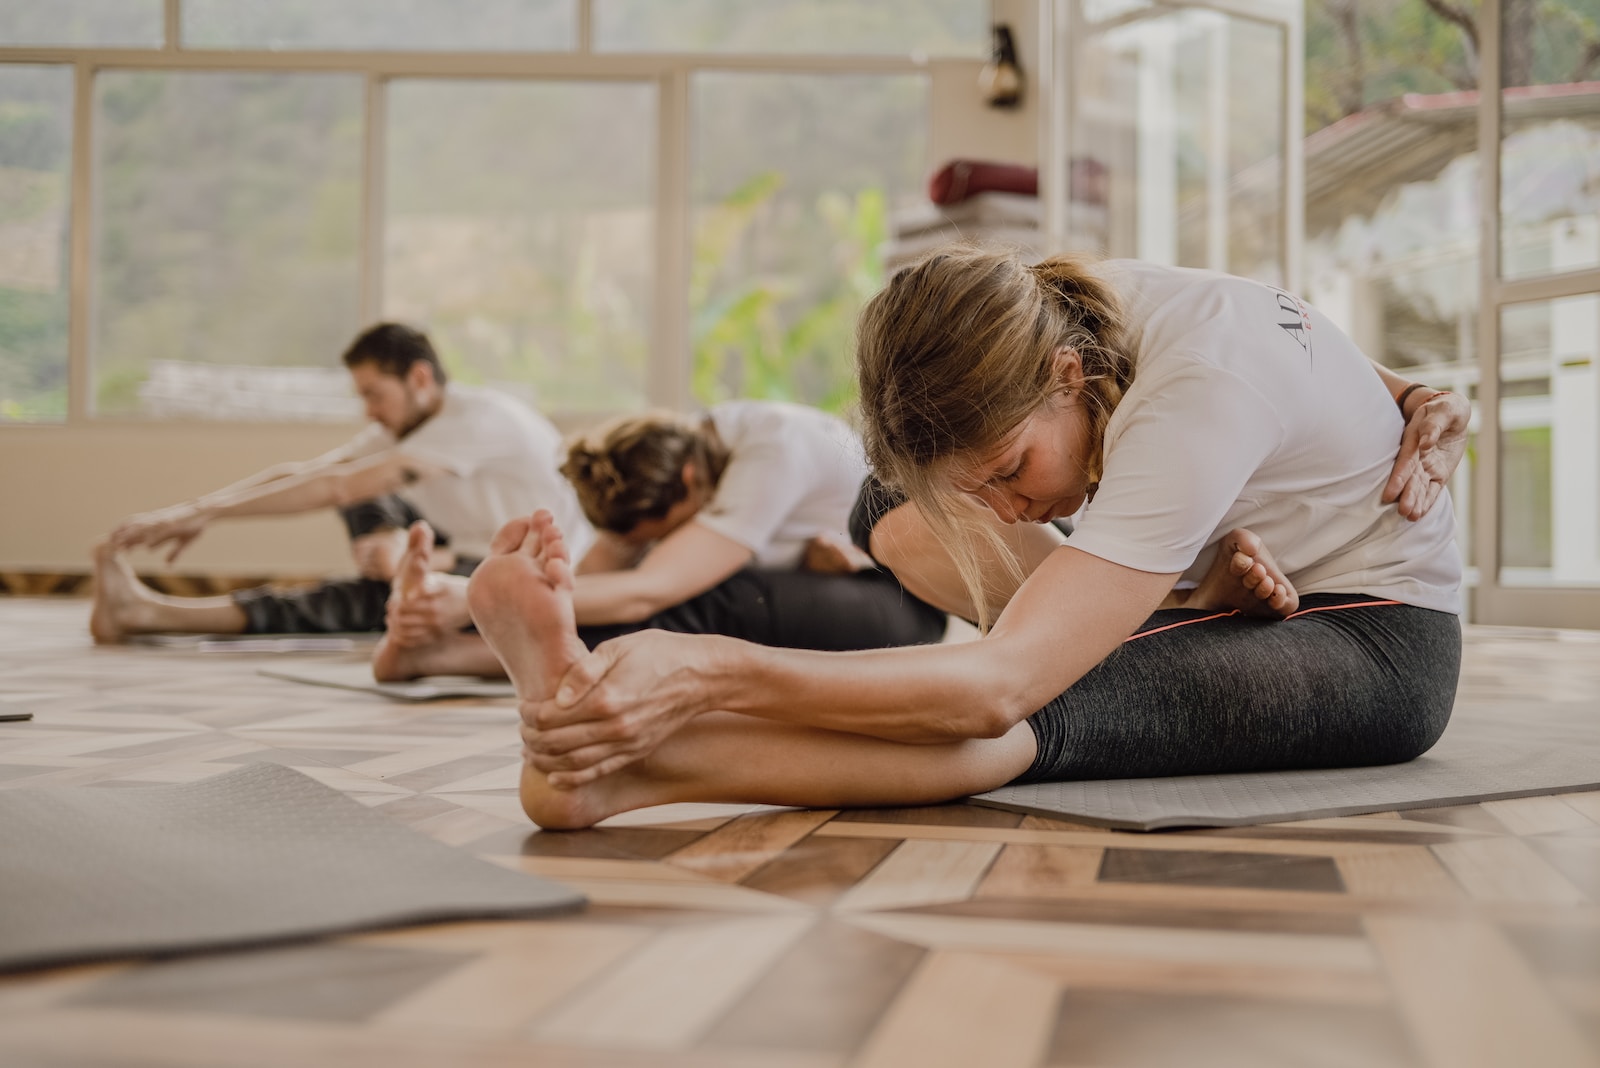 Trouvez votre équilibre intérieur et découvrez les bienfaits du yoga avec des cours gratuits en ligne !